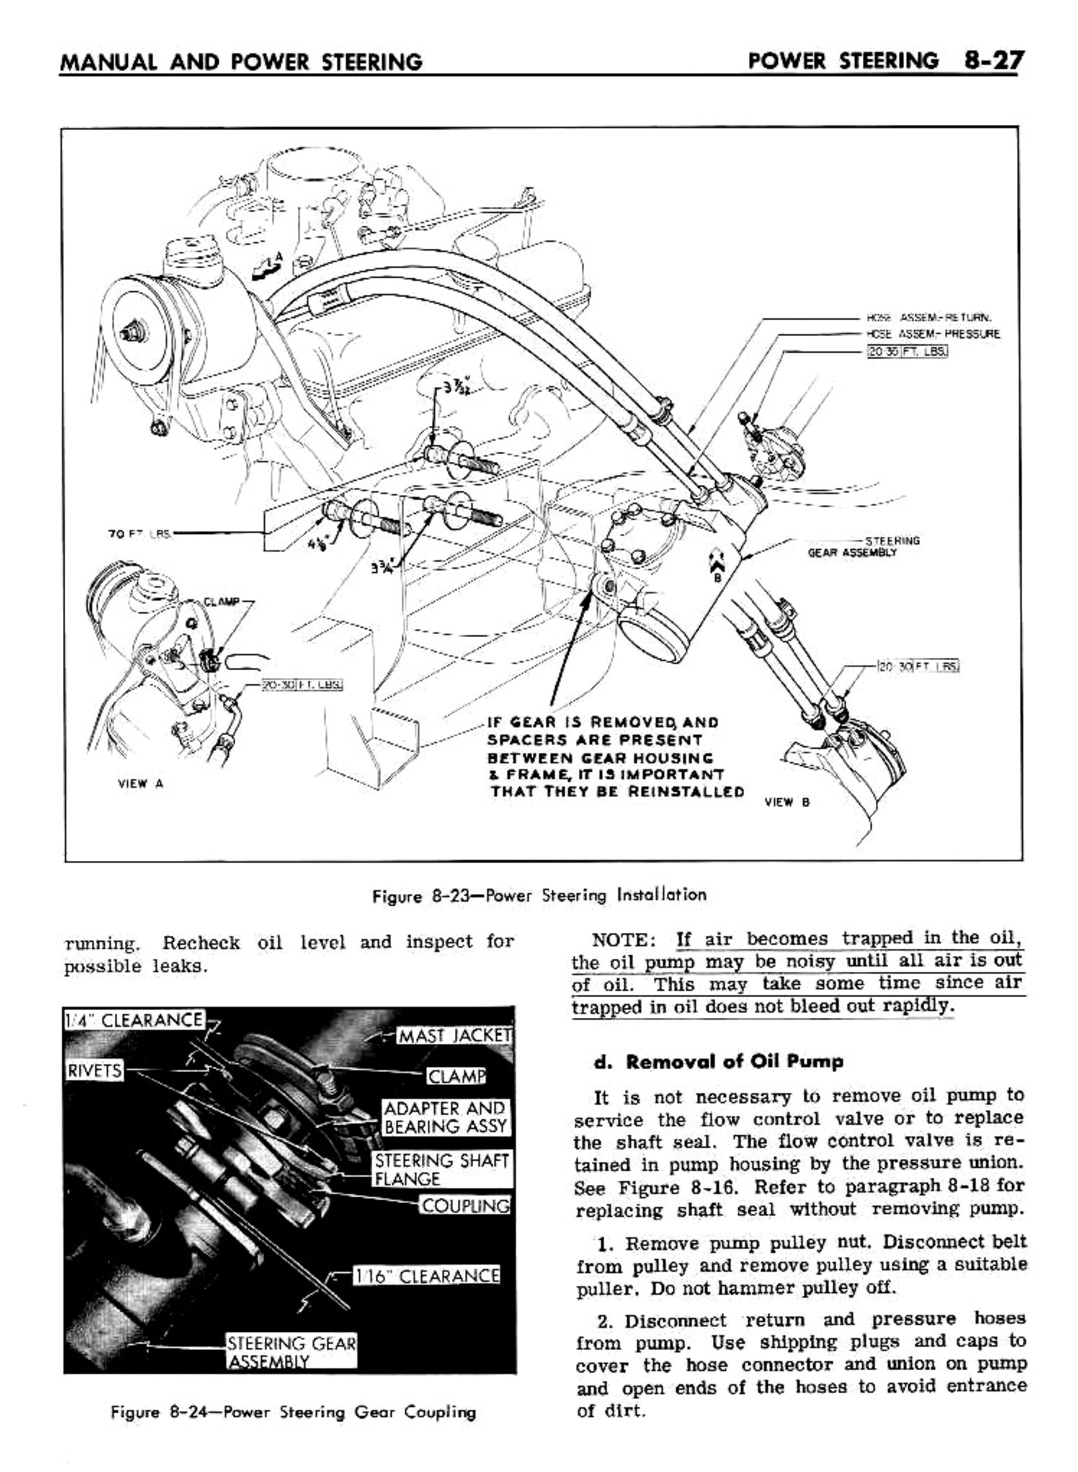 n_08 1961 Buick Shop Manual - Steering-027-027.jpg